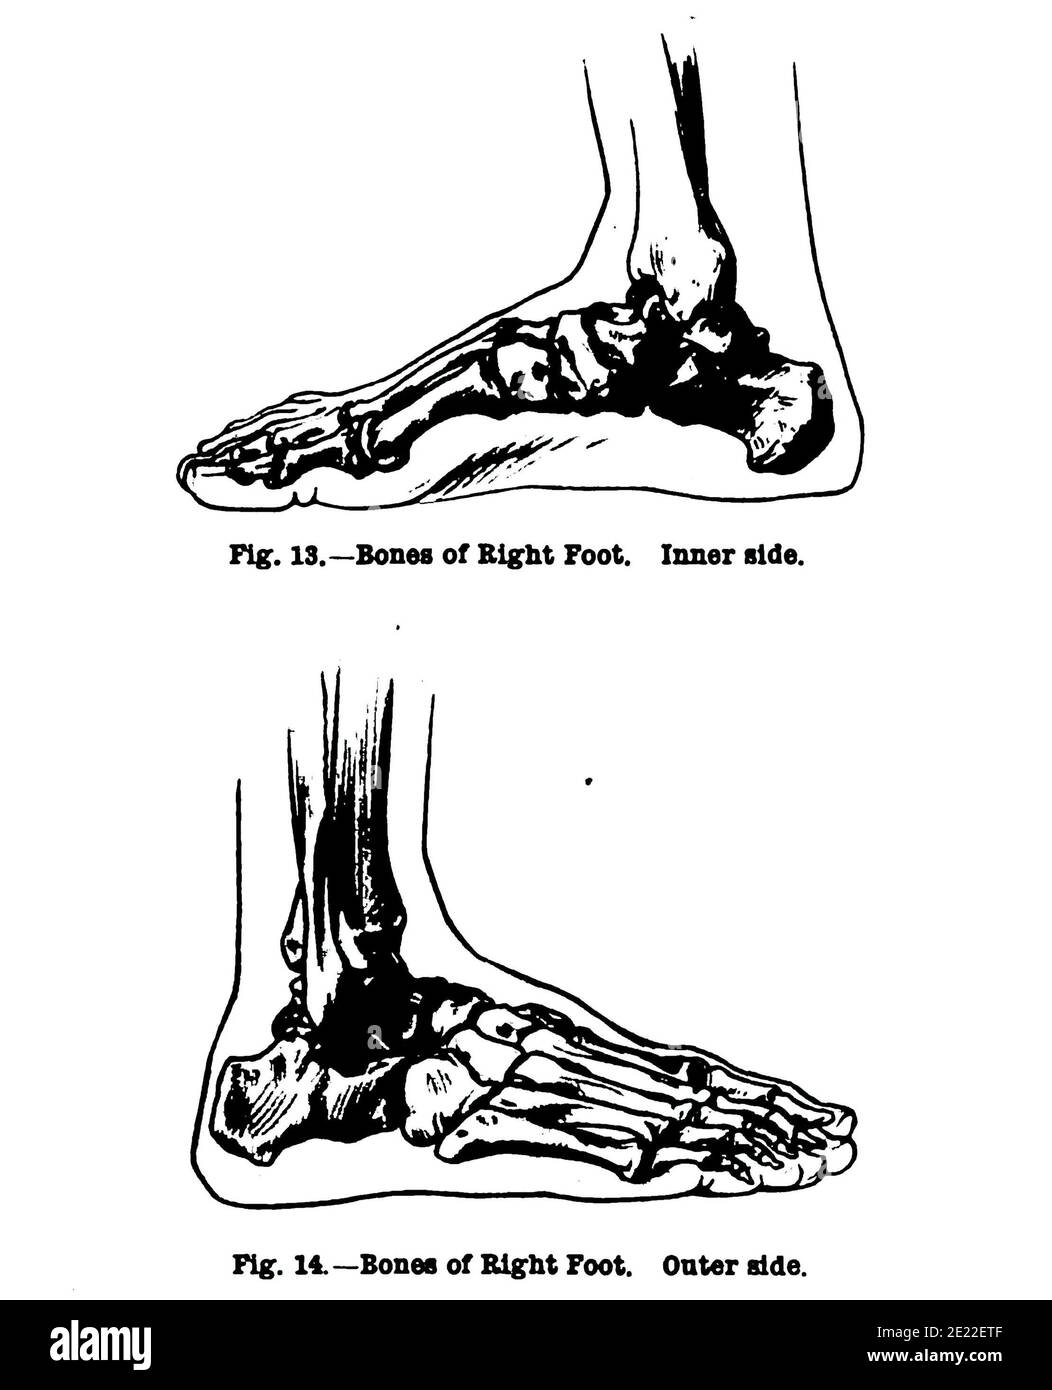 Vertikale Anatomiezeichnung der inneren und äußeren Seite des rechten Fußes, aus dem 19. Jahrhundert Stockfoto